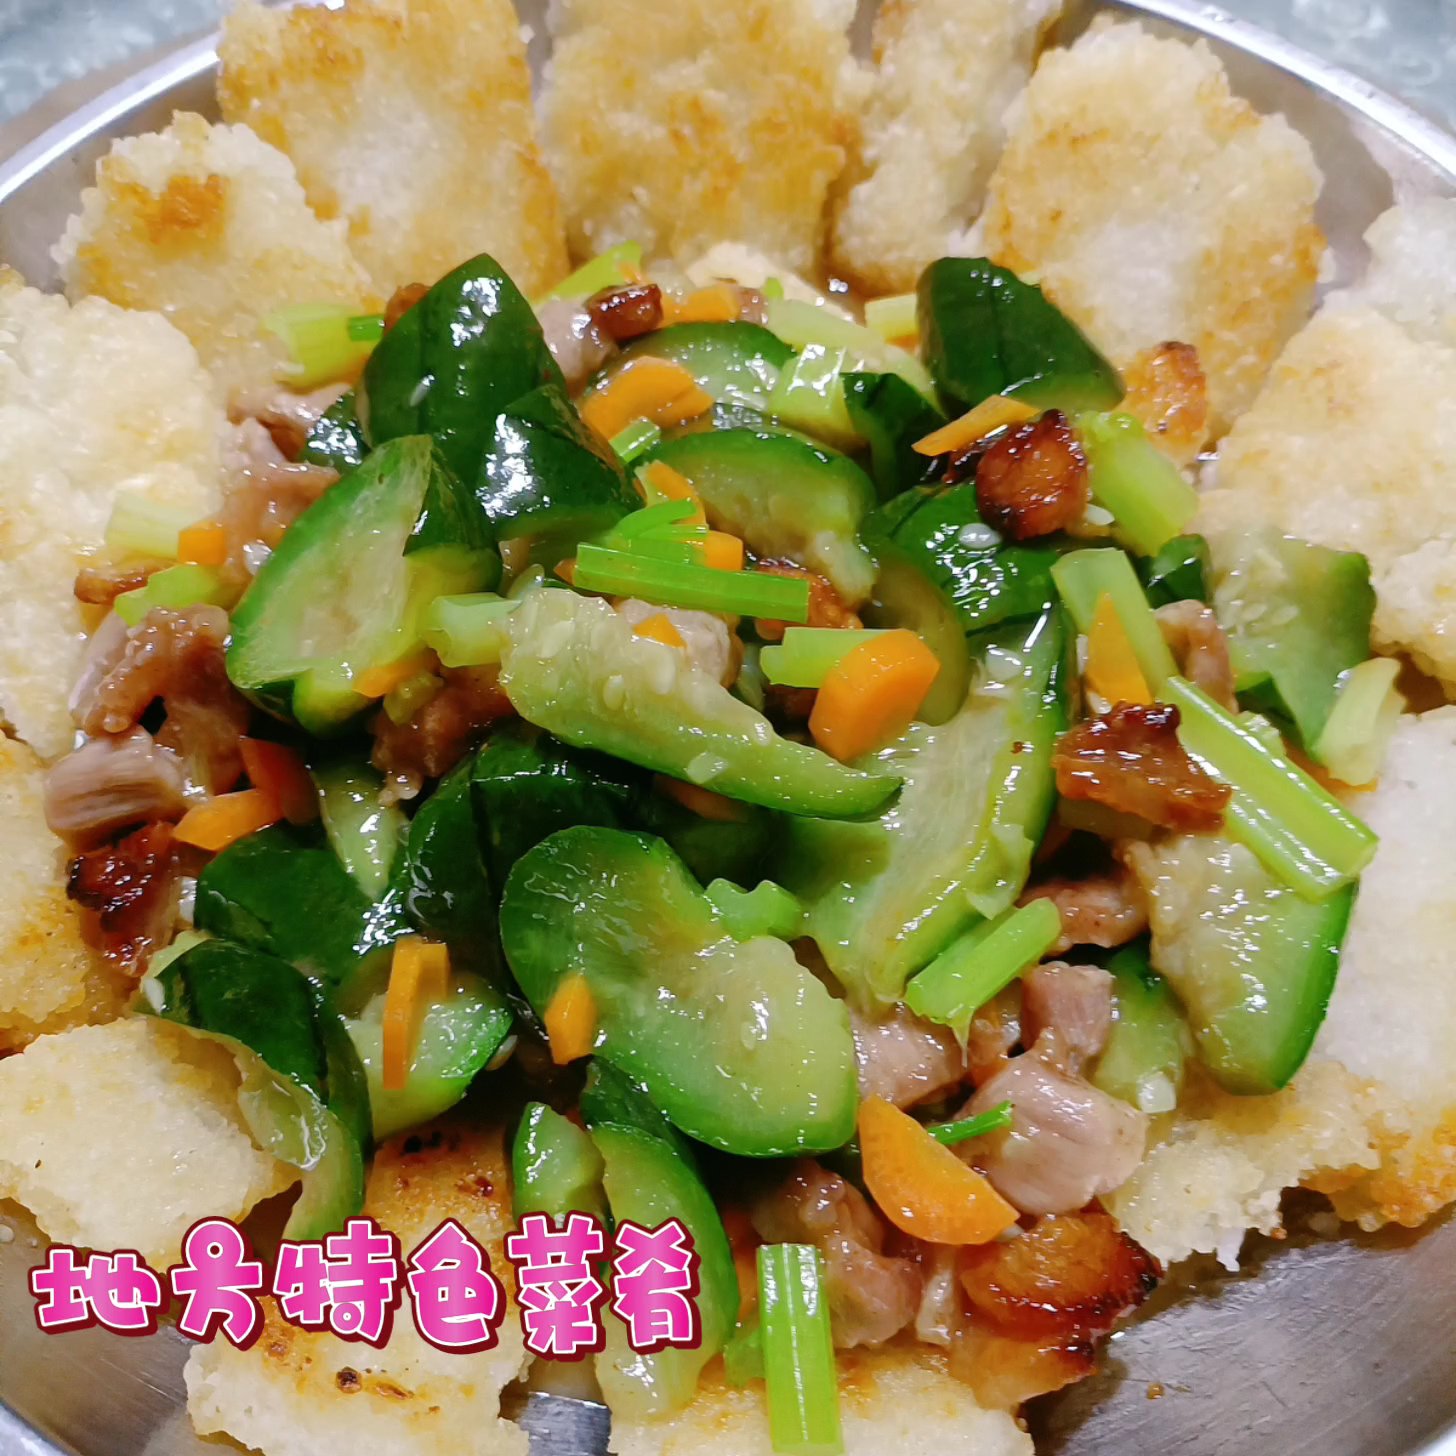 特色锅巴菜——自制，食材可替换哦！